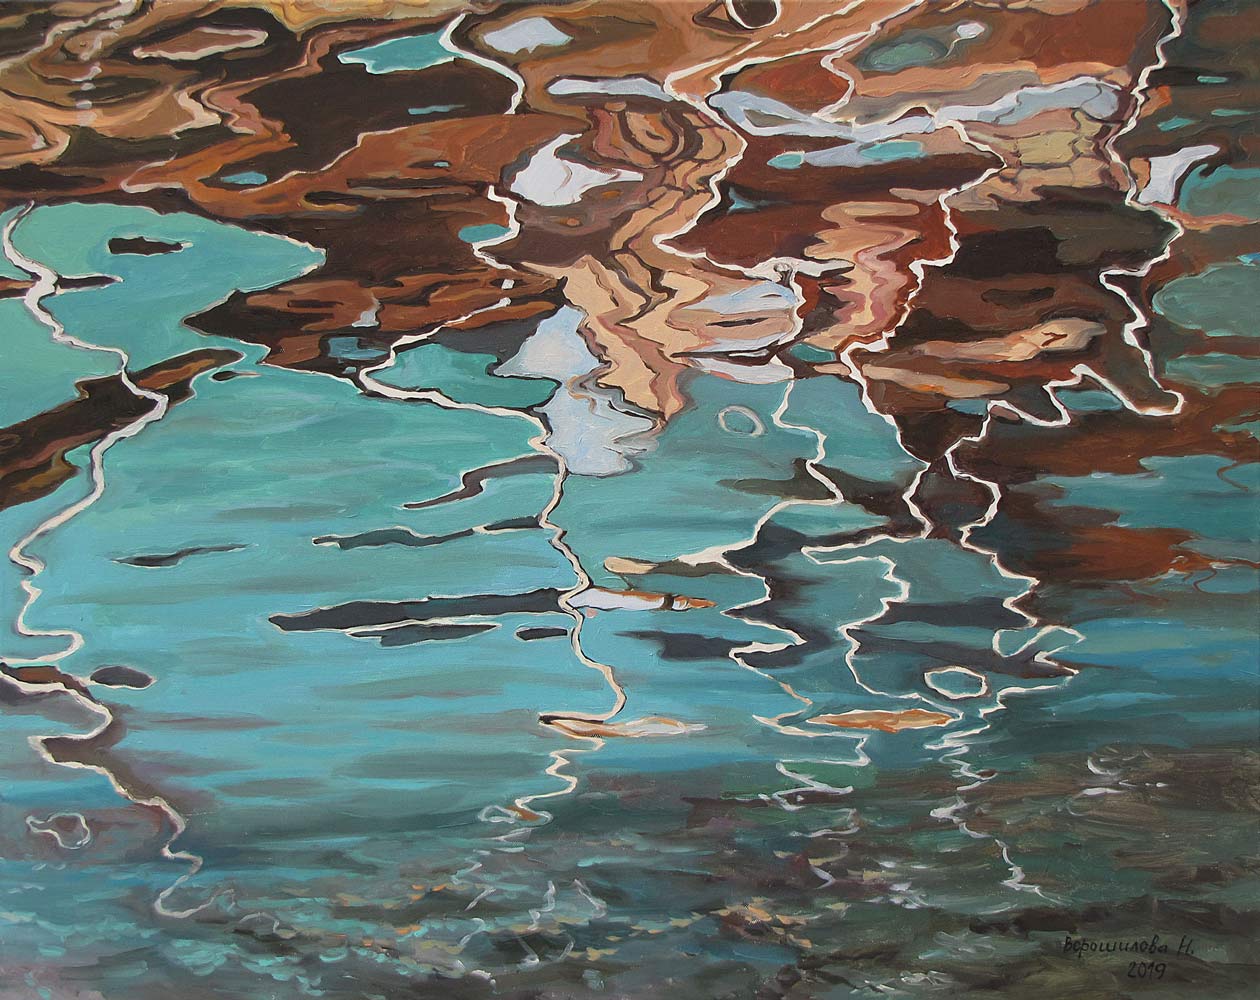 Exquisite Art Natalia Novikova Reflection. Water